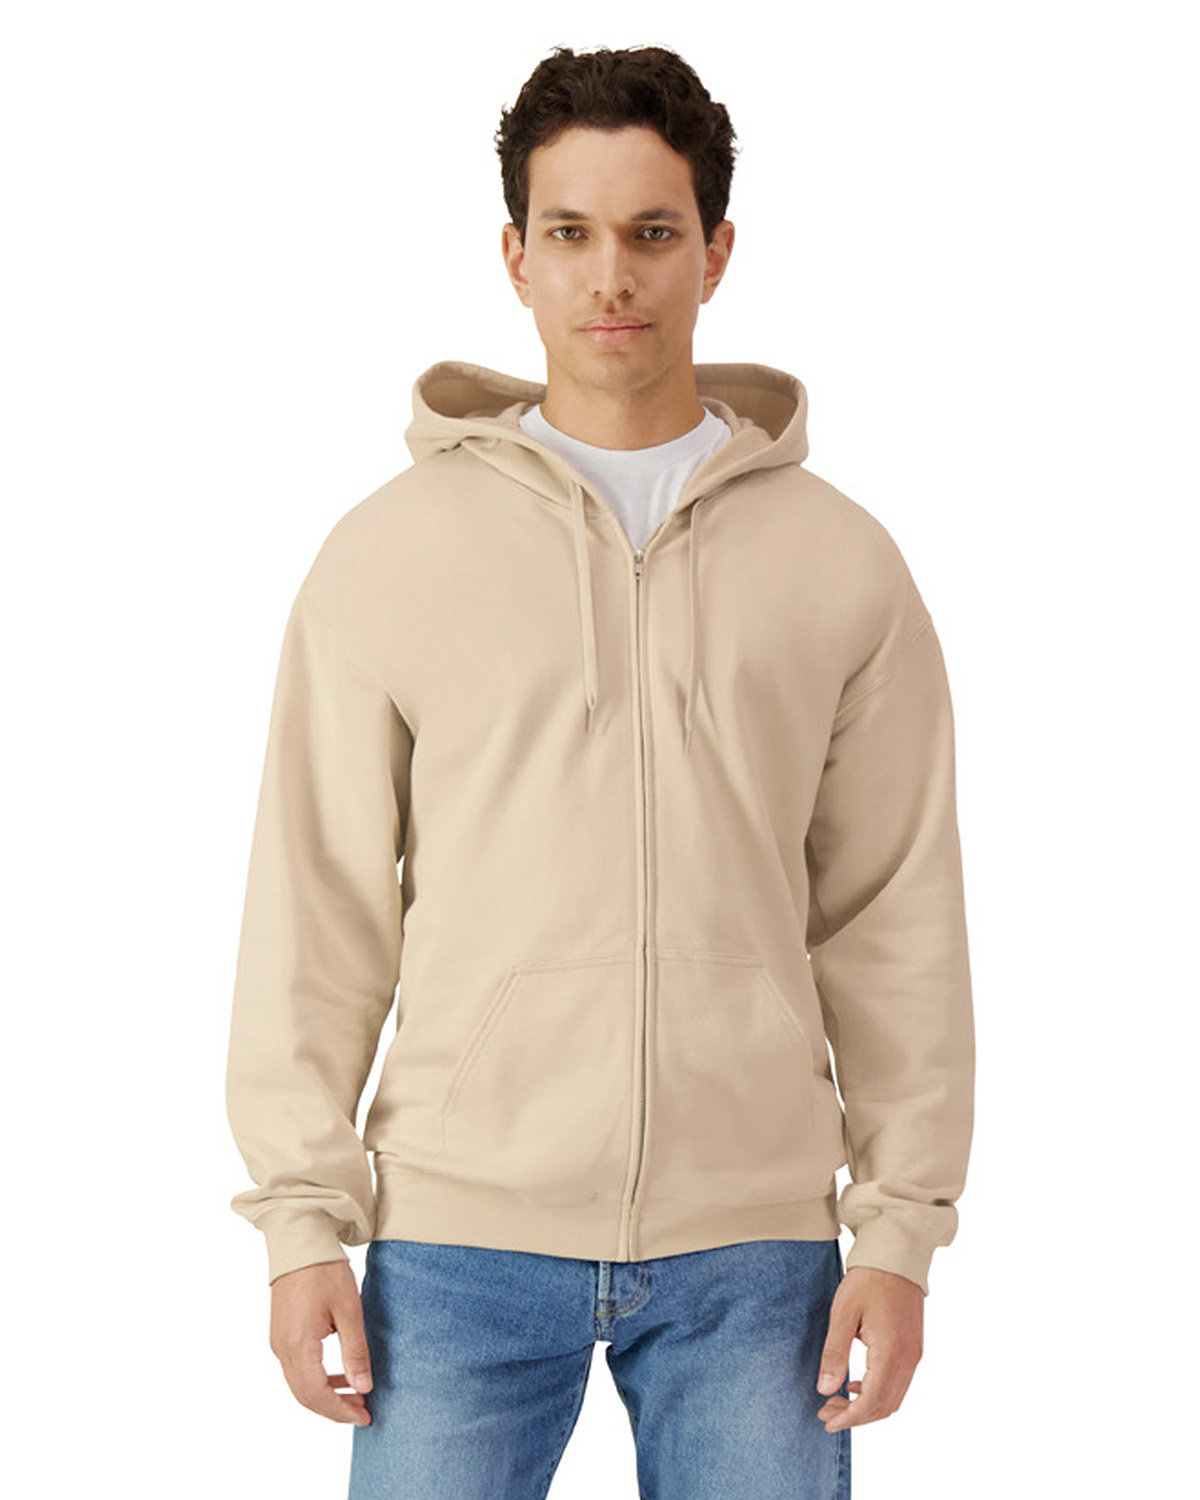 Unisex Softstyle Fleece Hooded Sweatshirt-Gildan